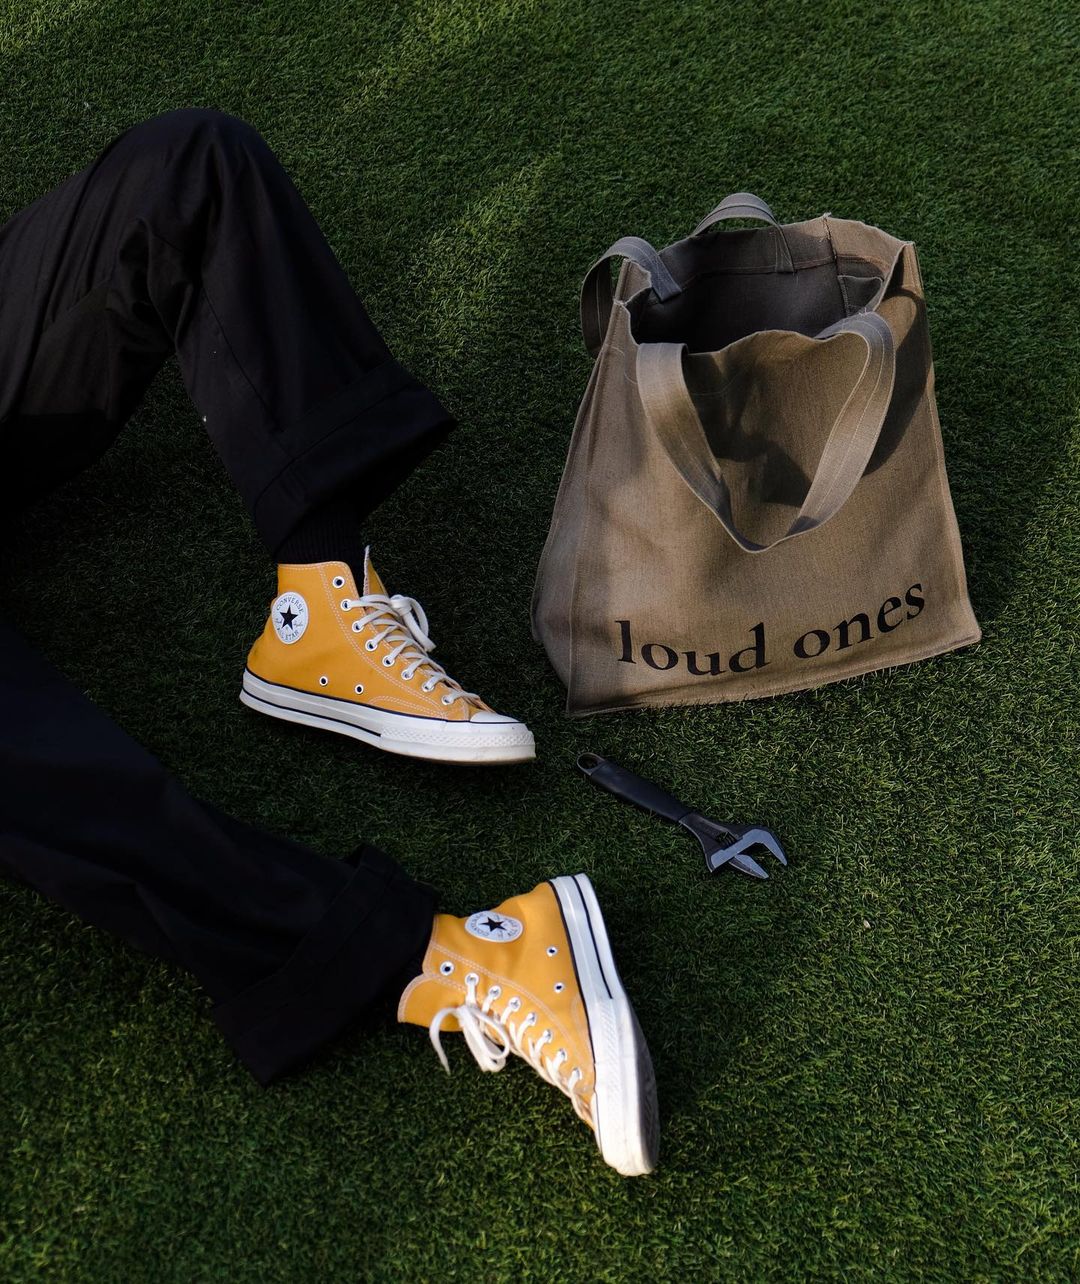 Journal Man: Loud Ones je domaći vintage modni brend za koji trebate čuti